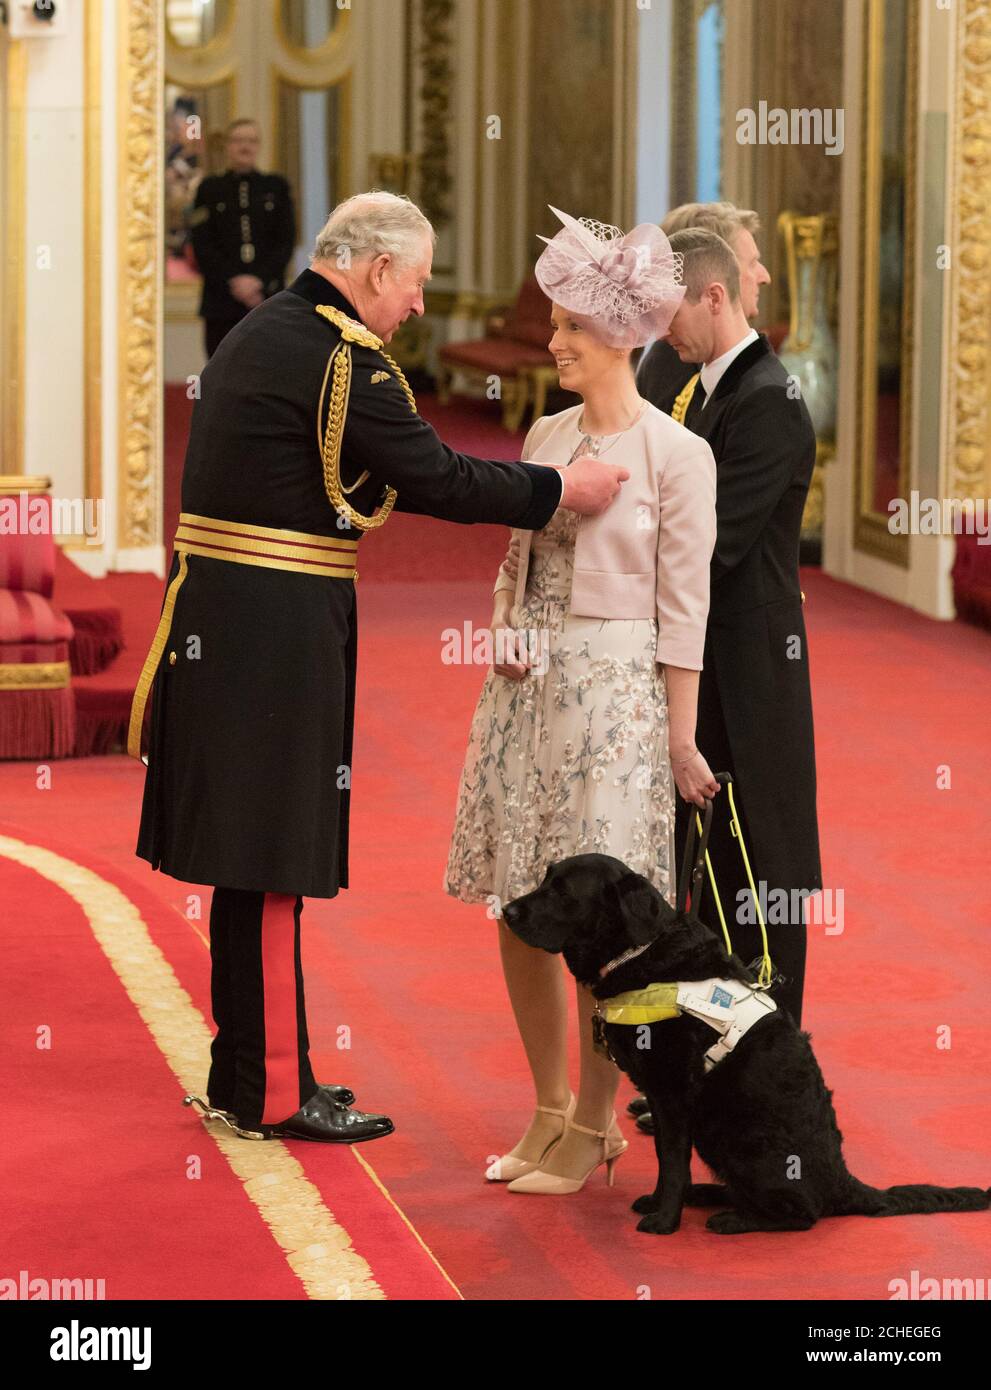 Madame Eran Cutliffe de Chiswick est faite OBE (Officier de l'ordre de l'Empire britannique) par le Prince de Galles à Buckingham Palace. Banque D'Images